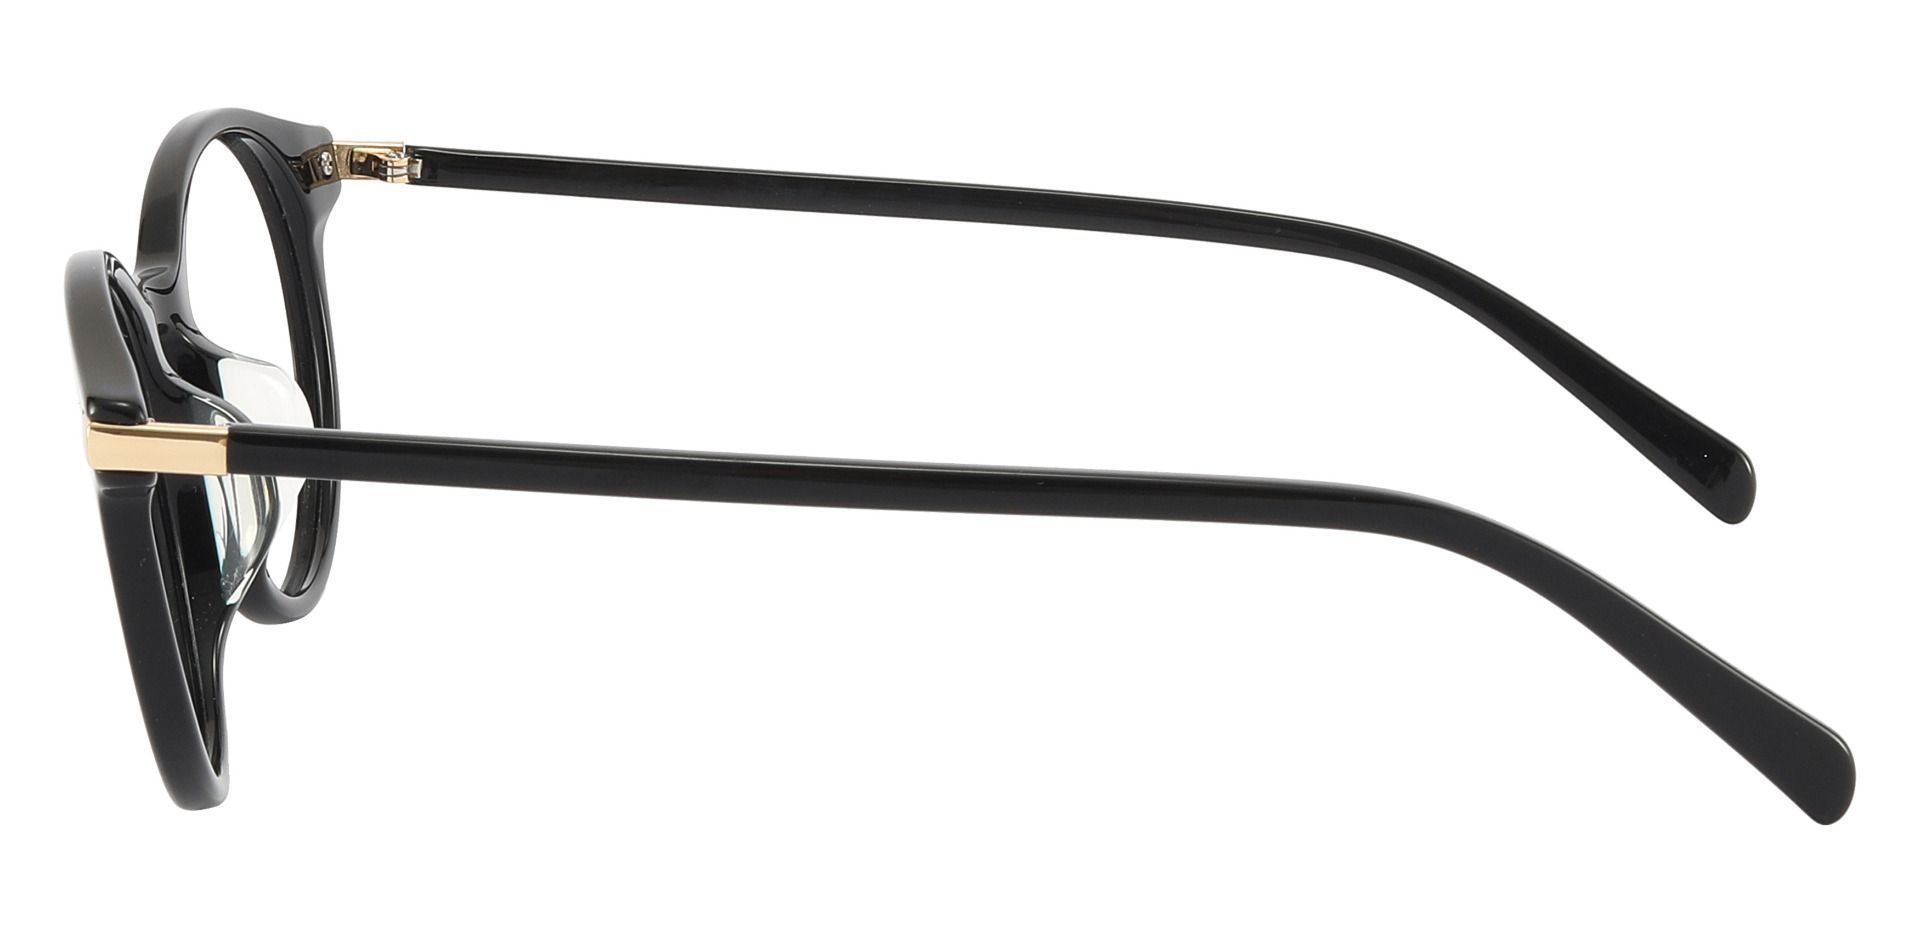 Barker Round Progressive Glasses - Black